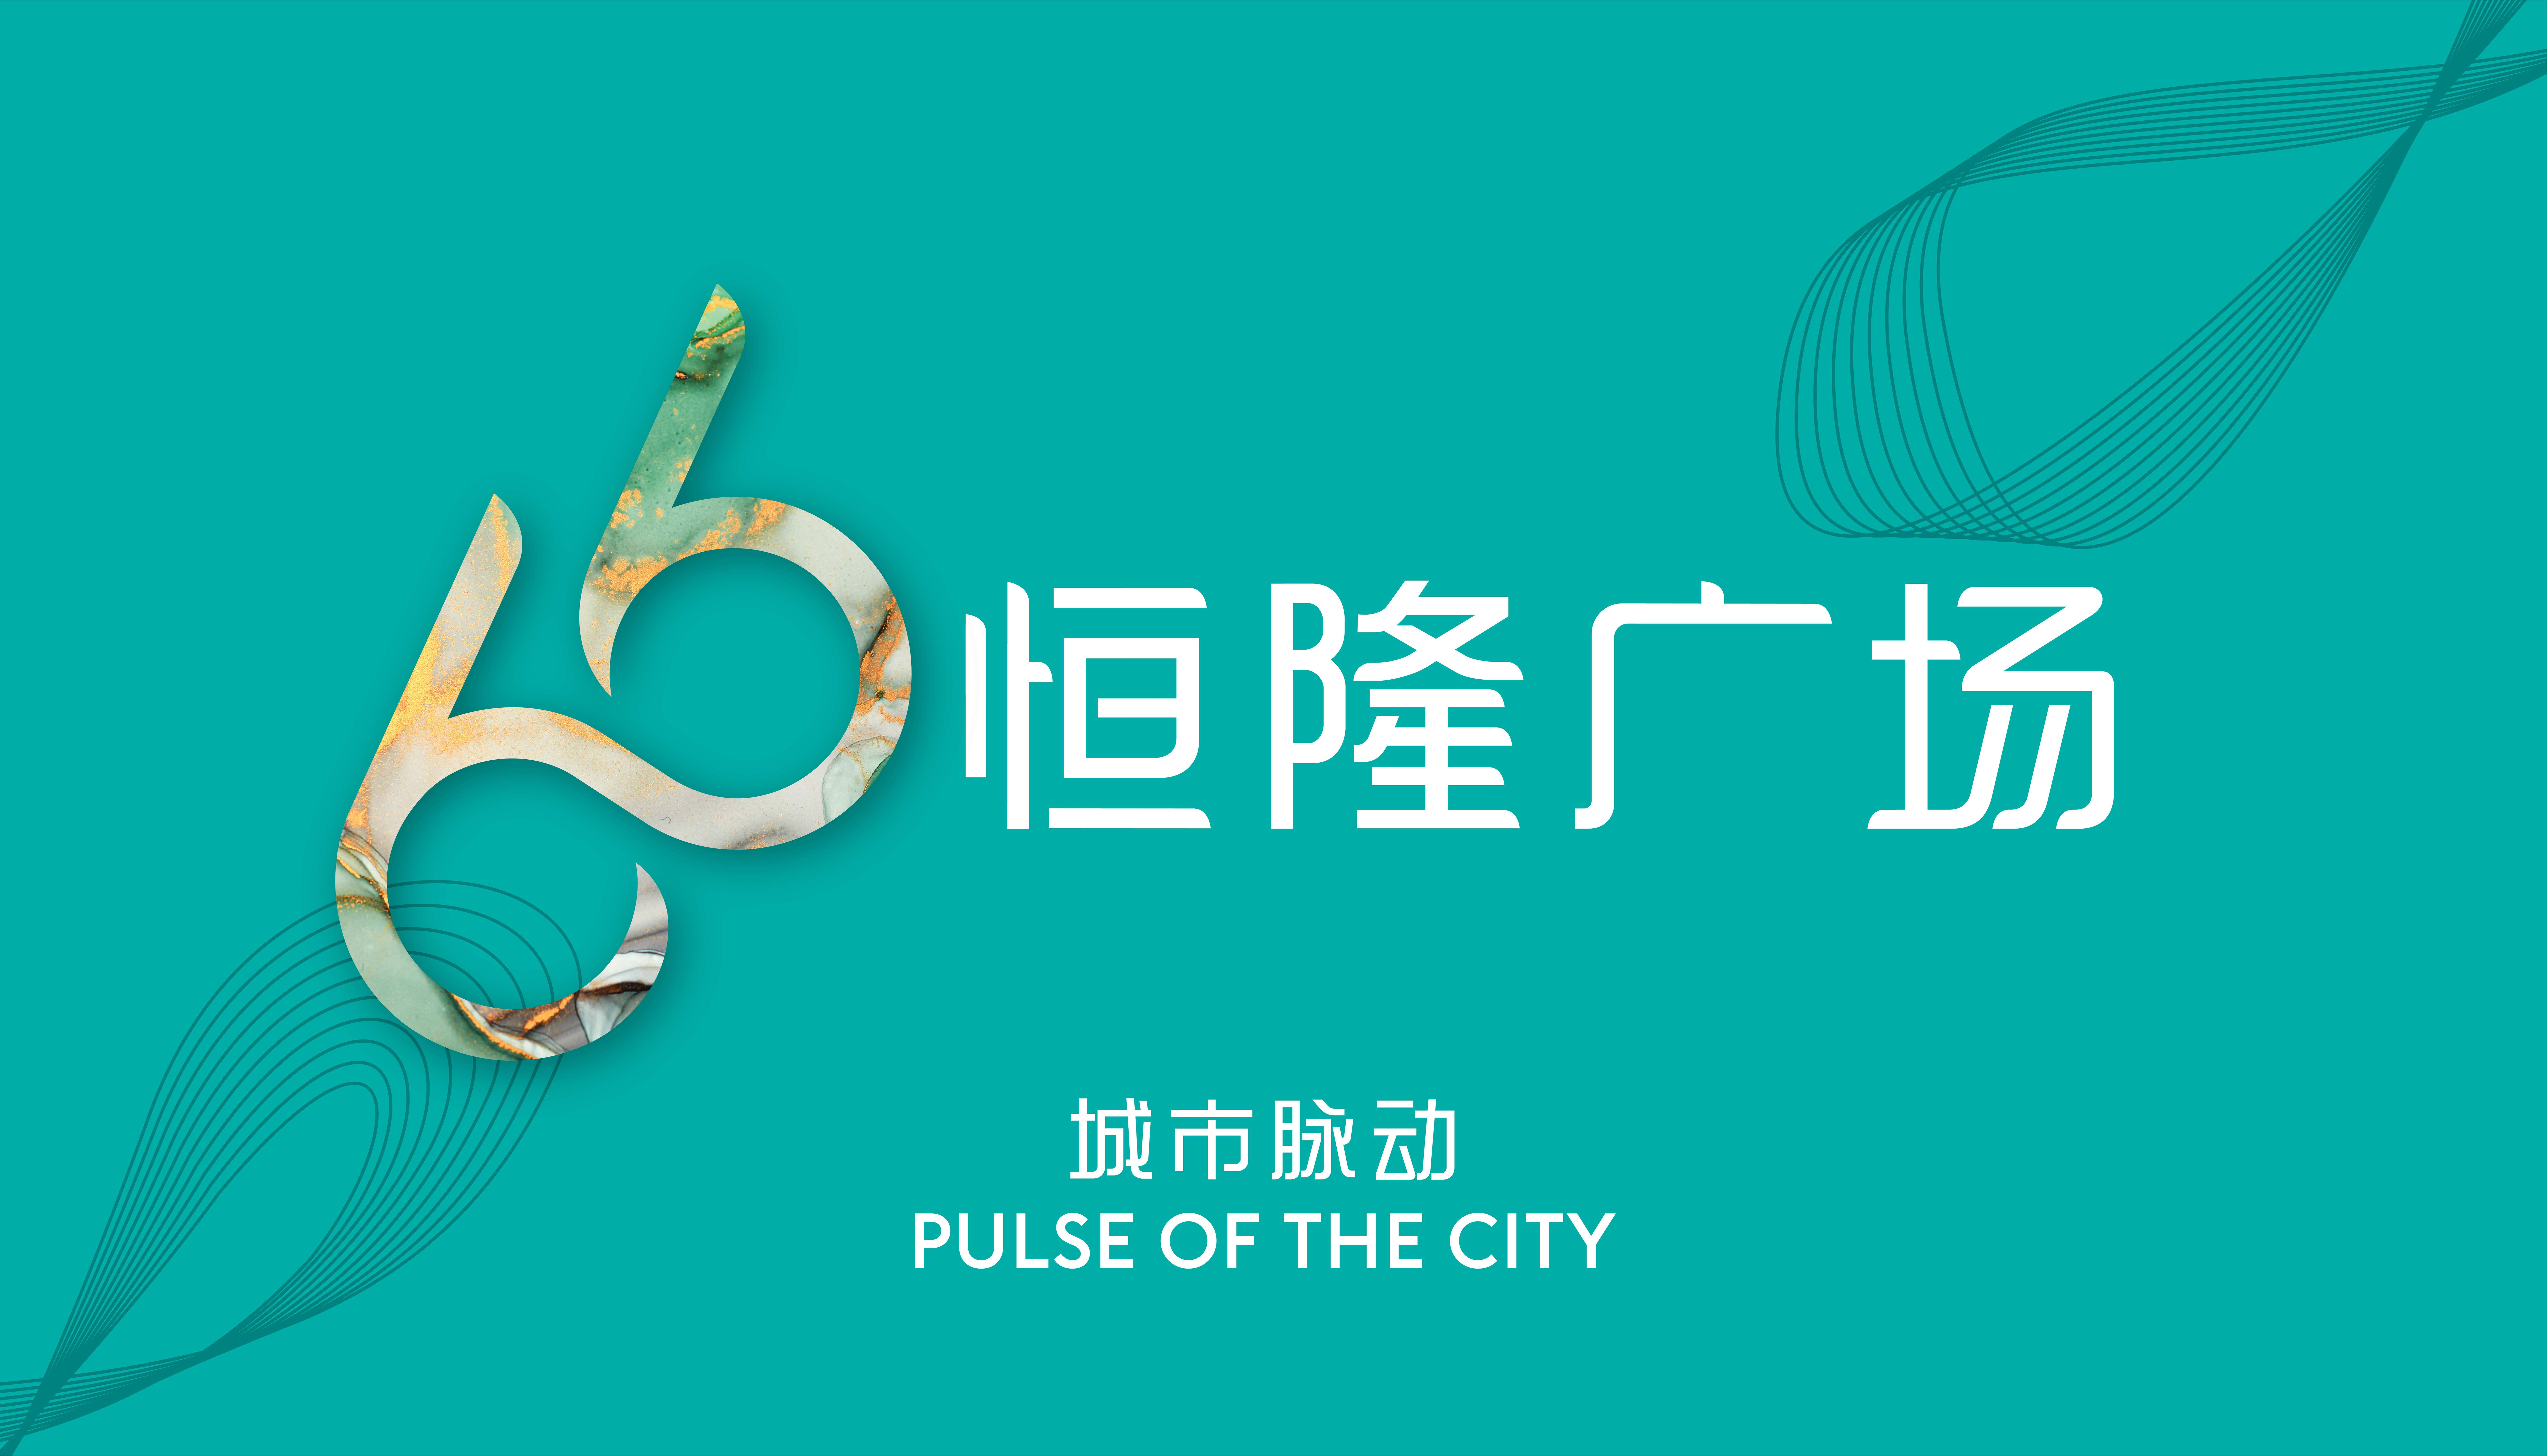 恒隆广场logo图片